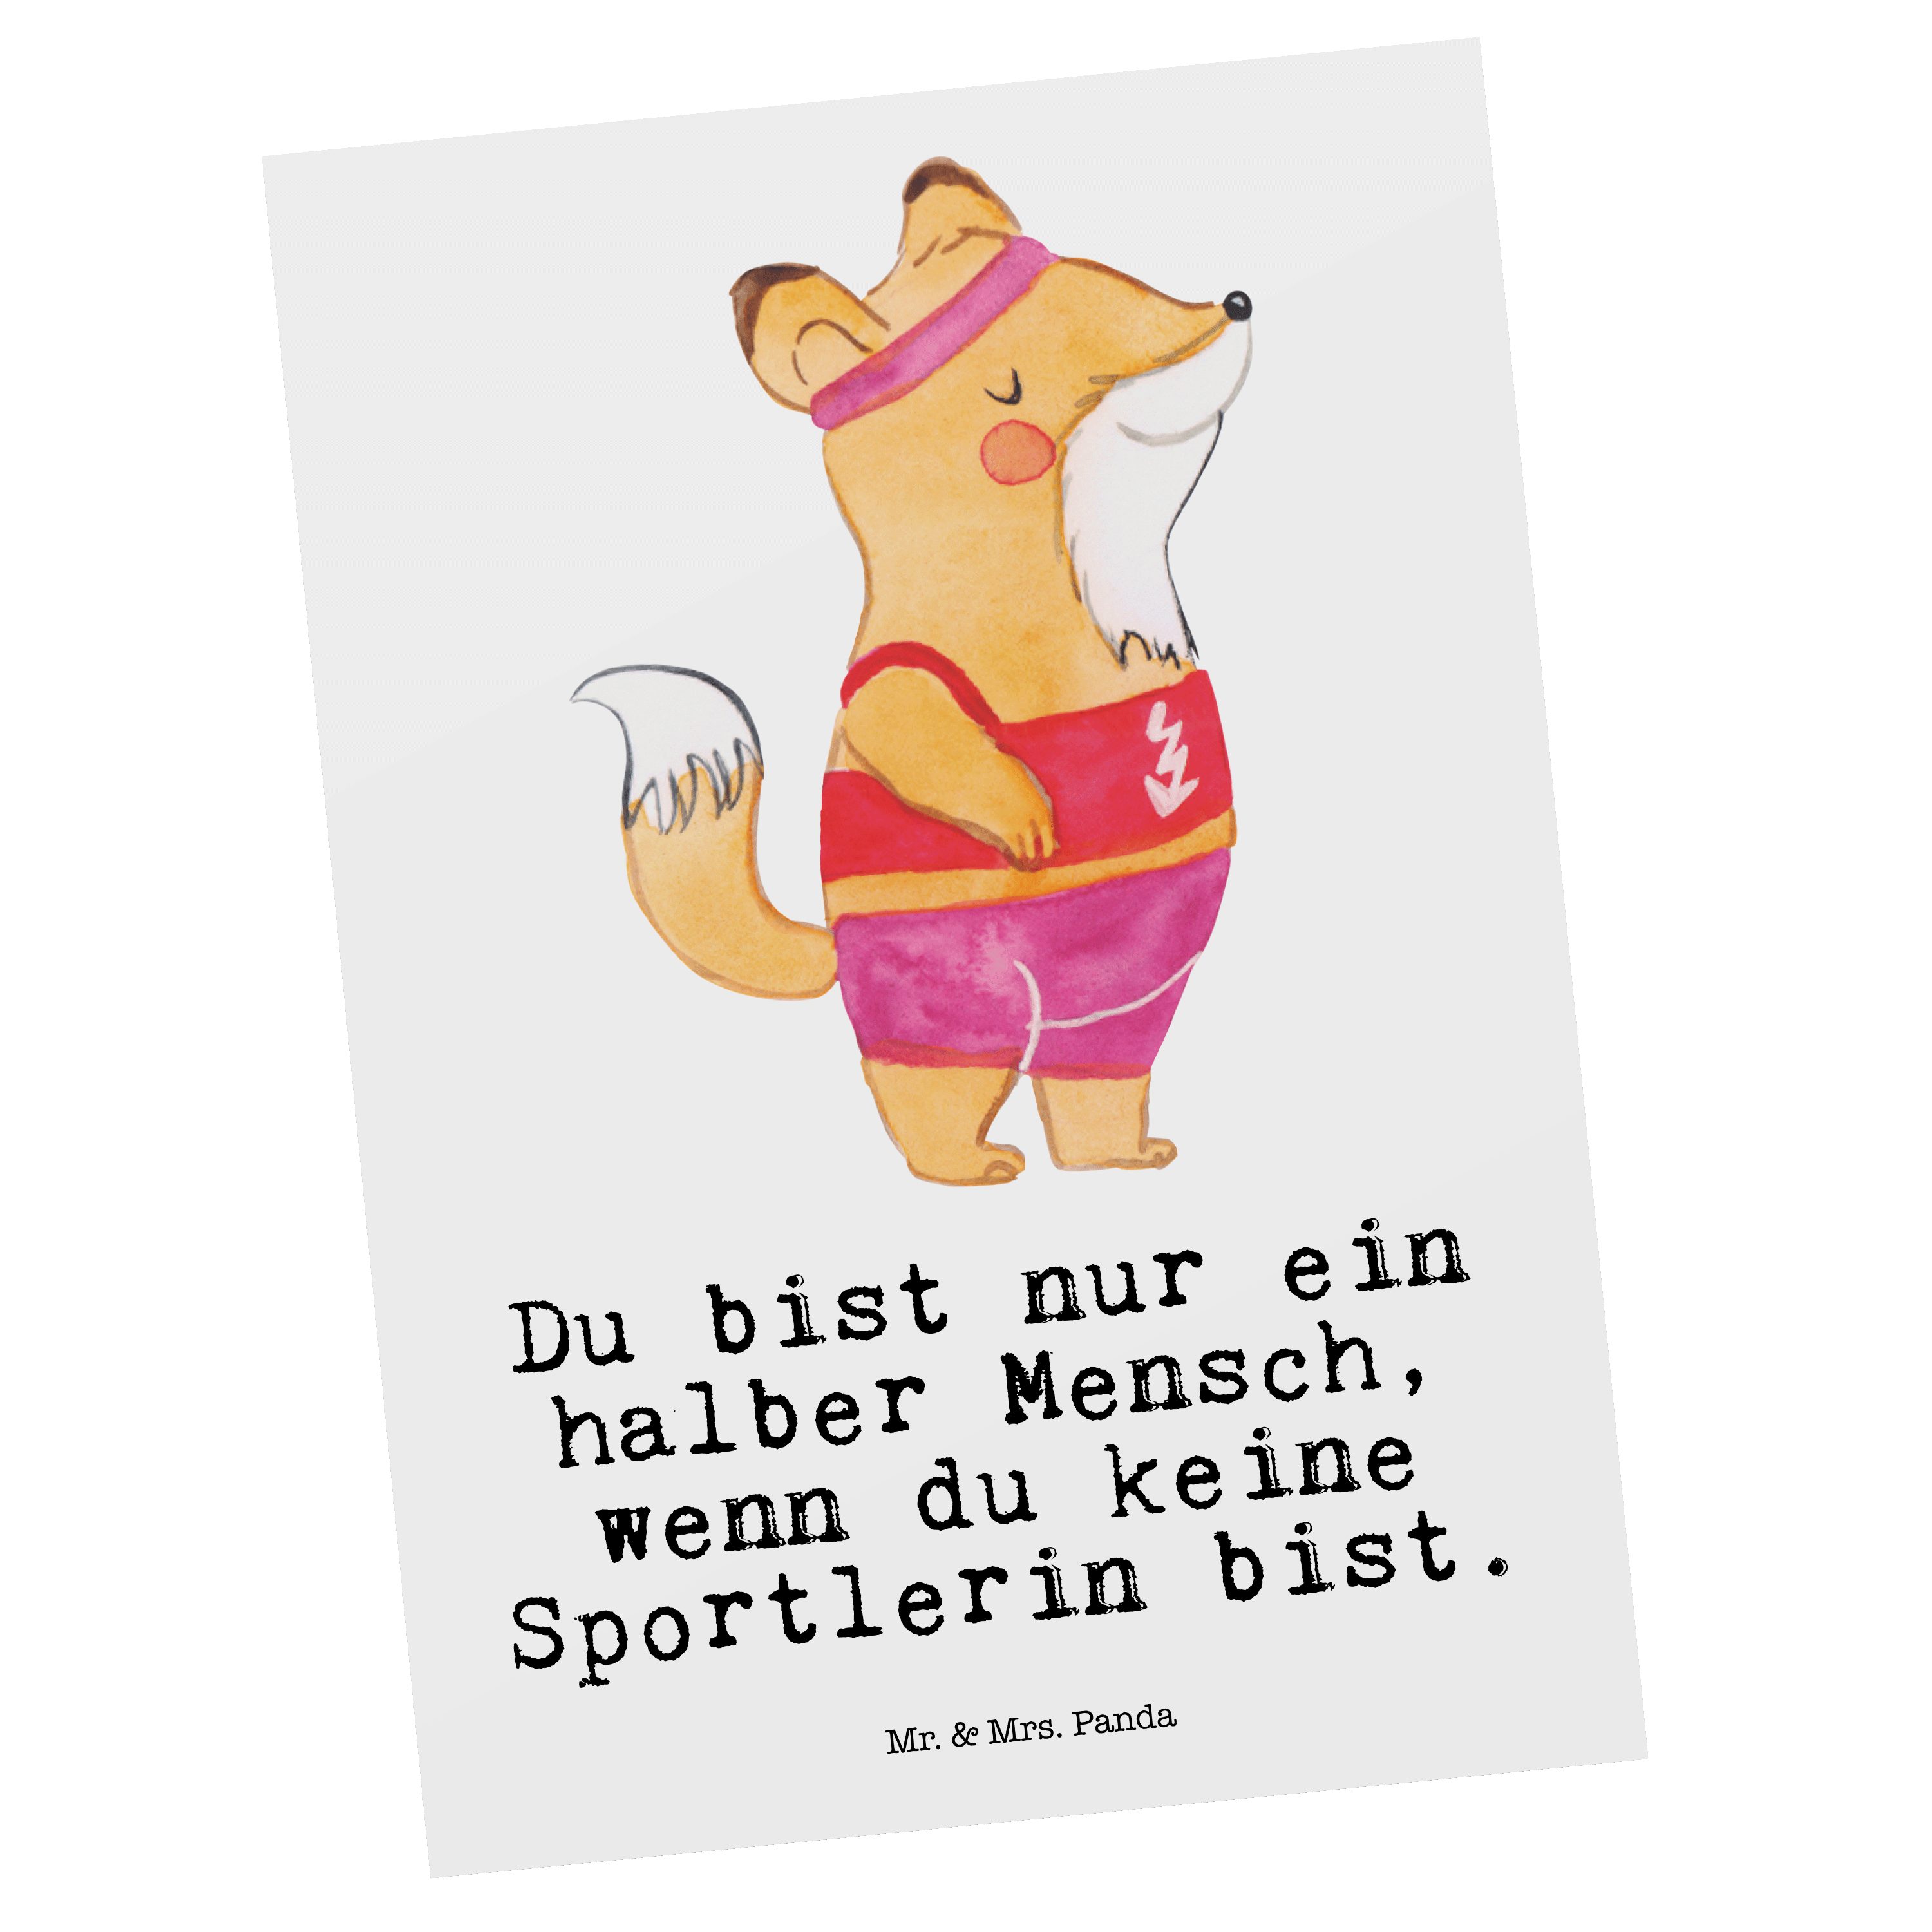 Mr. & Mrs. Panda Postkarte Sportlerin mit Herz - Weiß - Geschenk, Grußkarte, Dankeskarte, Gesche